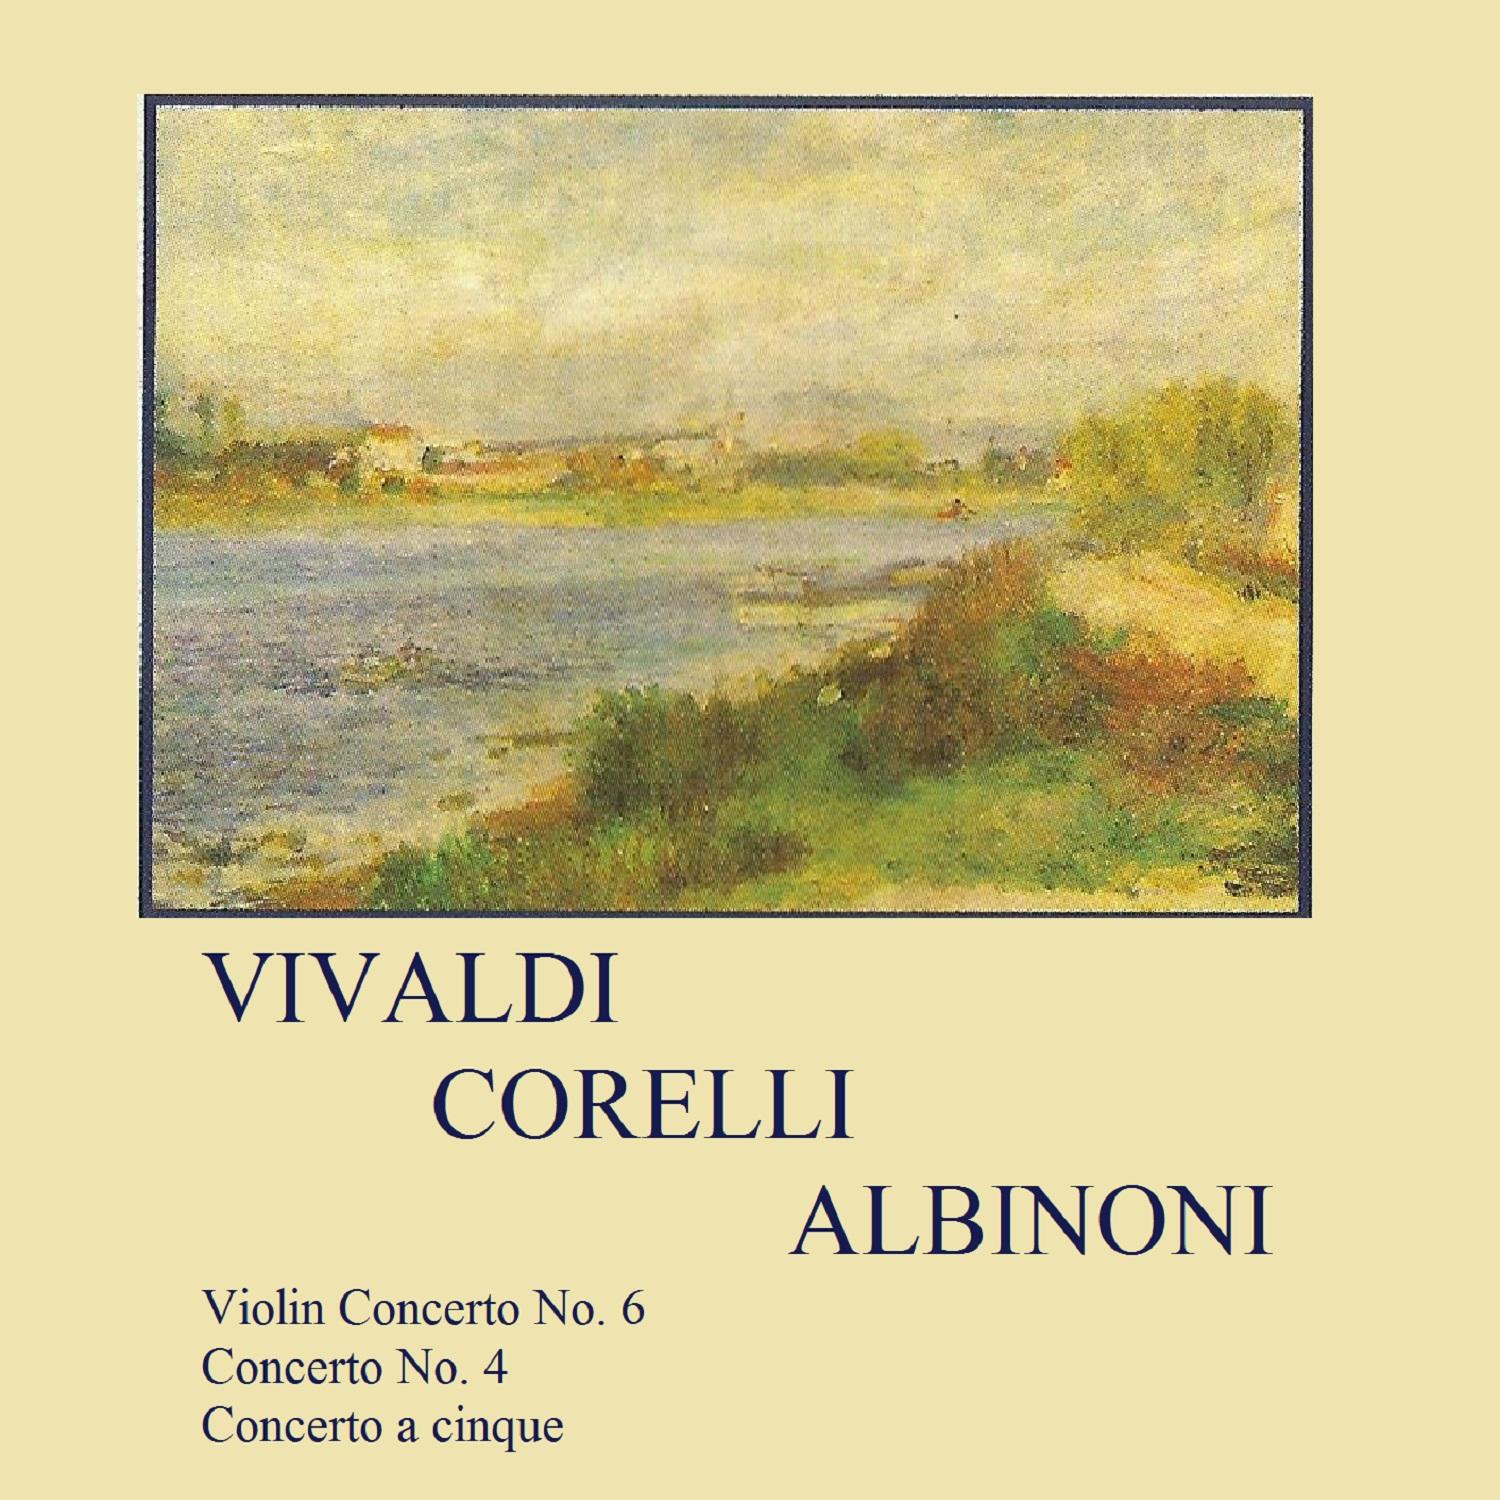 Violin Concerto No. 6 in A Minor, Op. 3: III. Presto